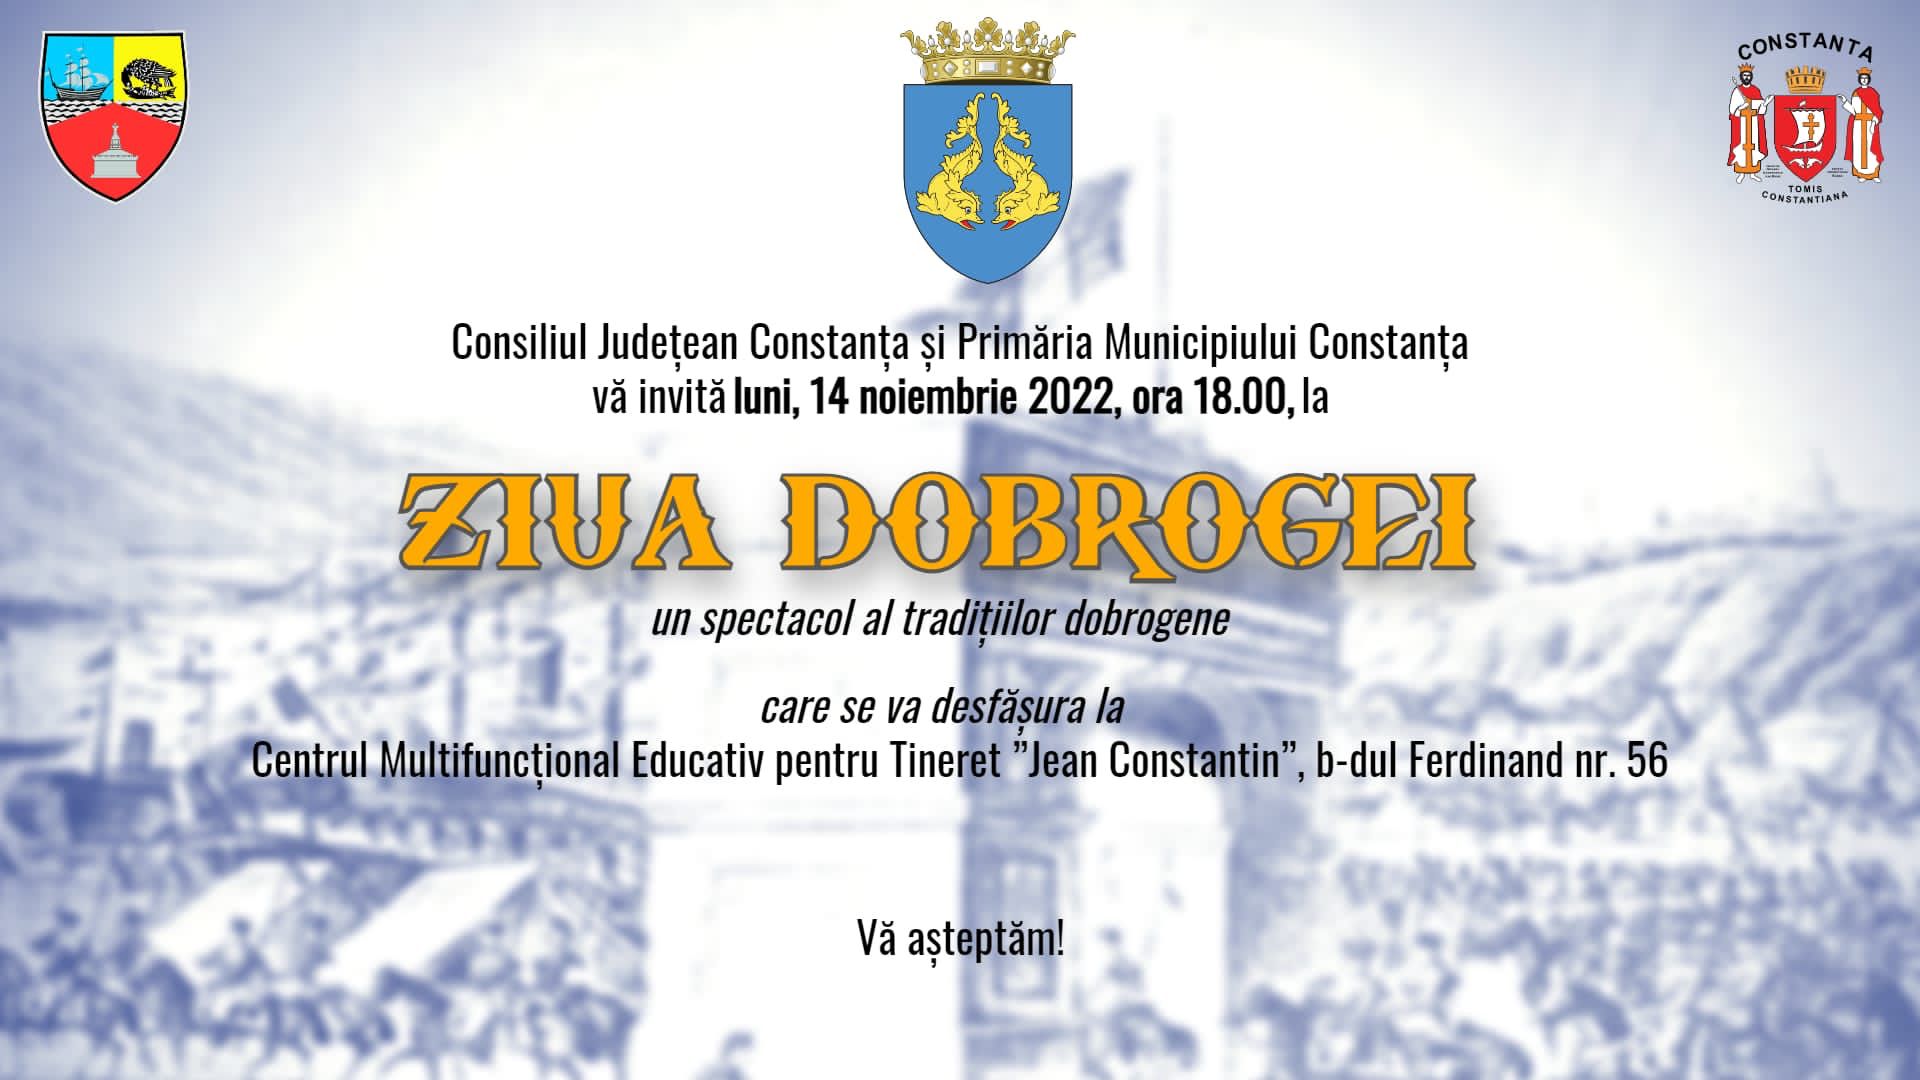 Consiliul Județean Constanța organizează luni Ziua Dobrogei. Constănțenii sunt invitați la spectacol